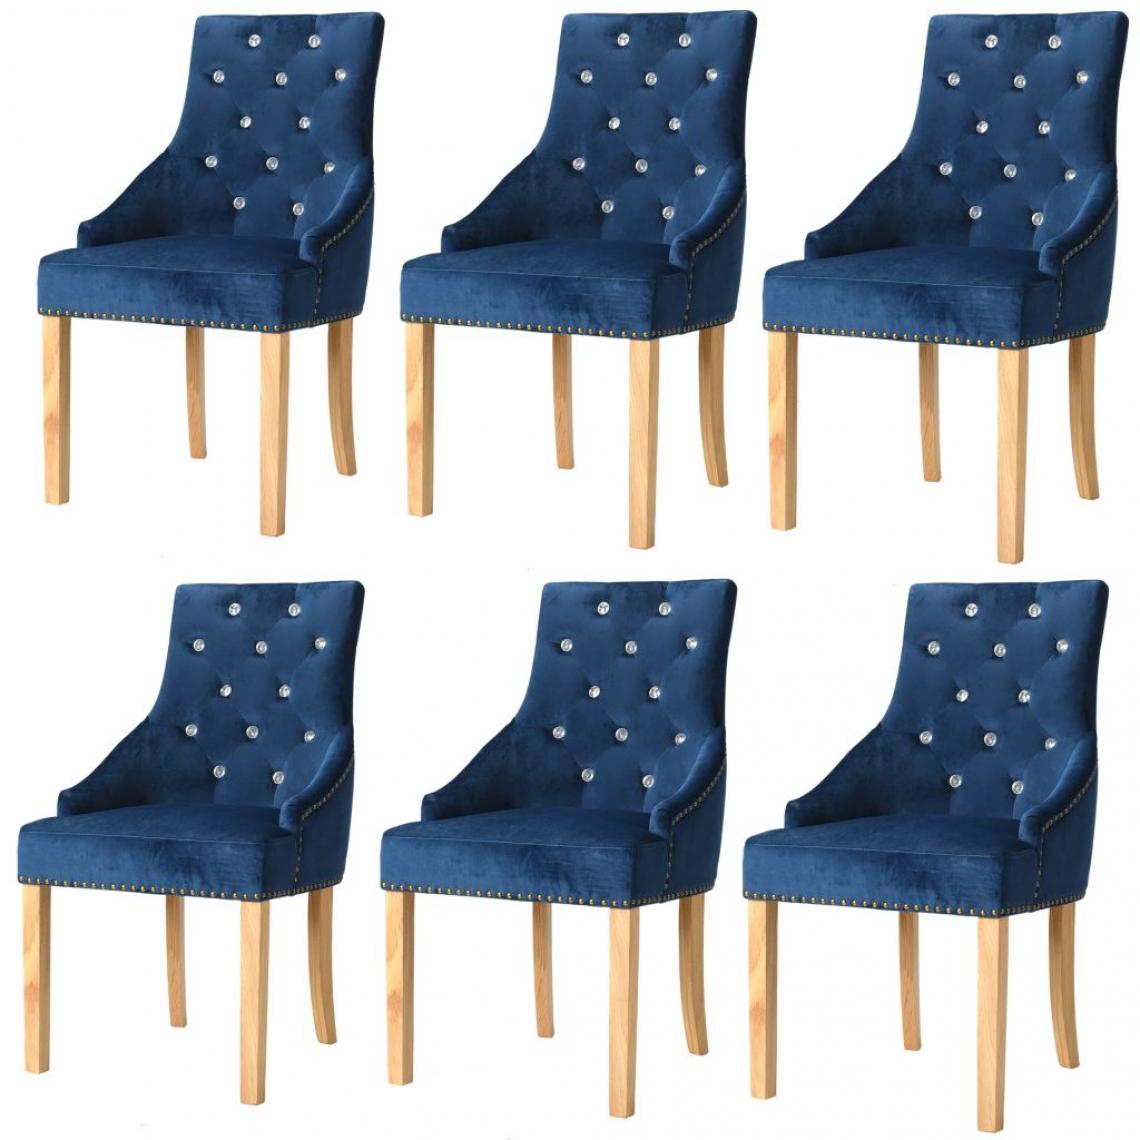 Decoshop26 - Lot de 6 chaises de salle à manger cuisine design intemporel chêne massif et velours bleu CDS022187 - Chaises